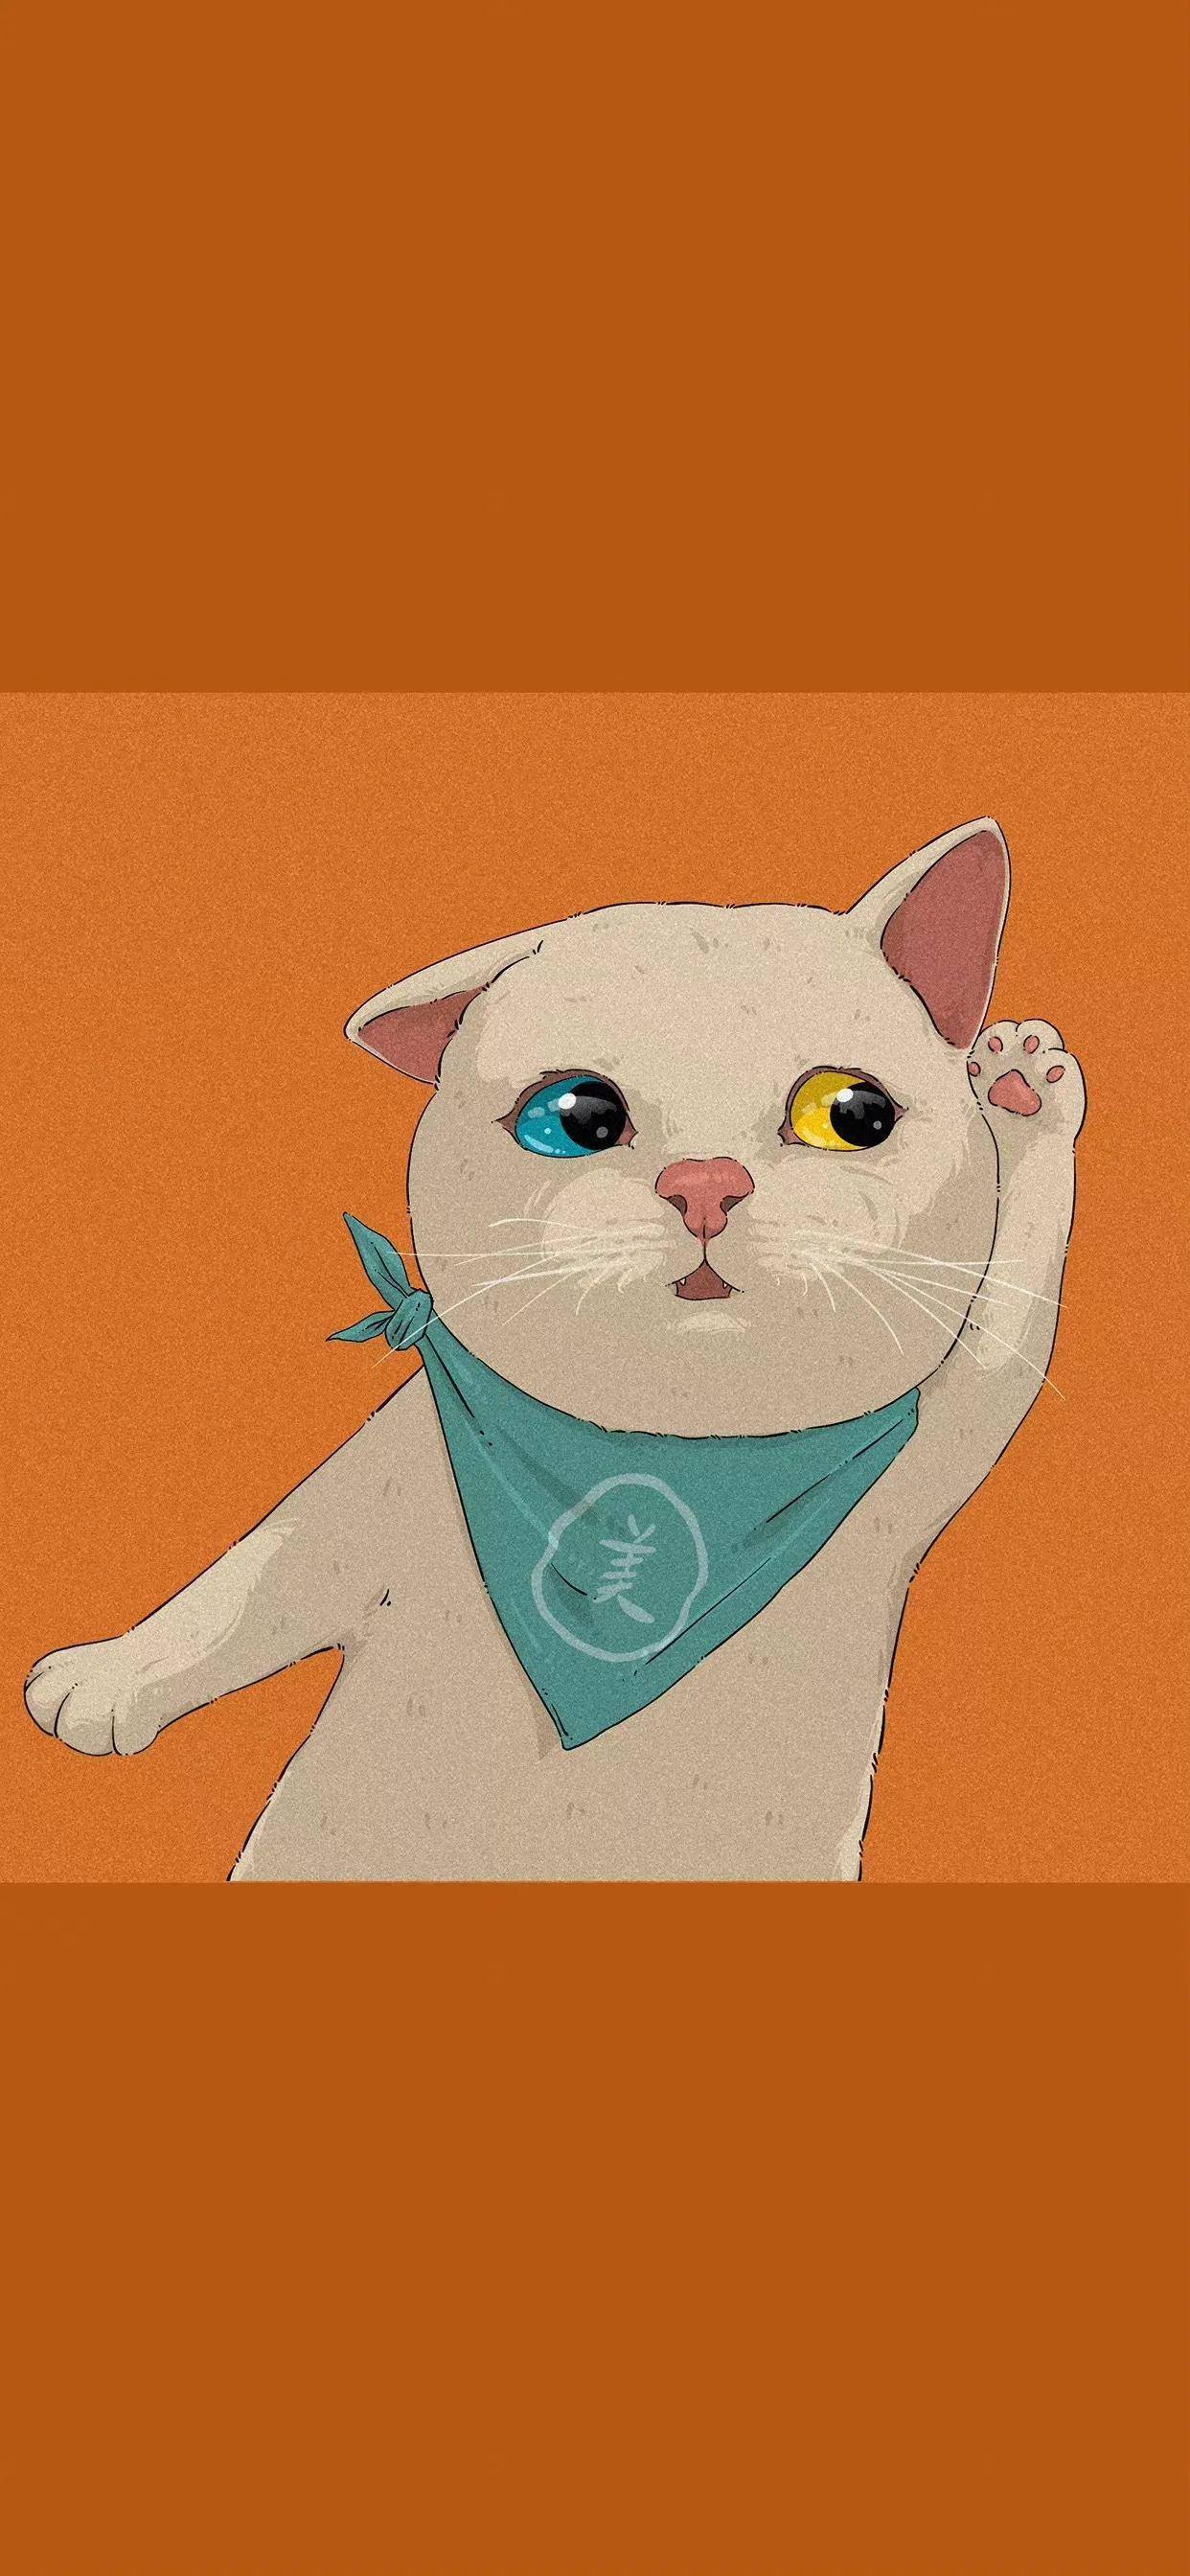 可爱极了的小喵喵猫咪头像 男生女生都会喜欢的可爱头像图_微信头像-酷玩个性网